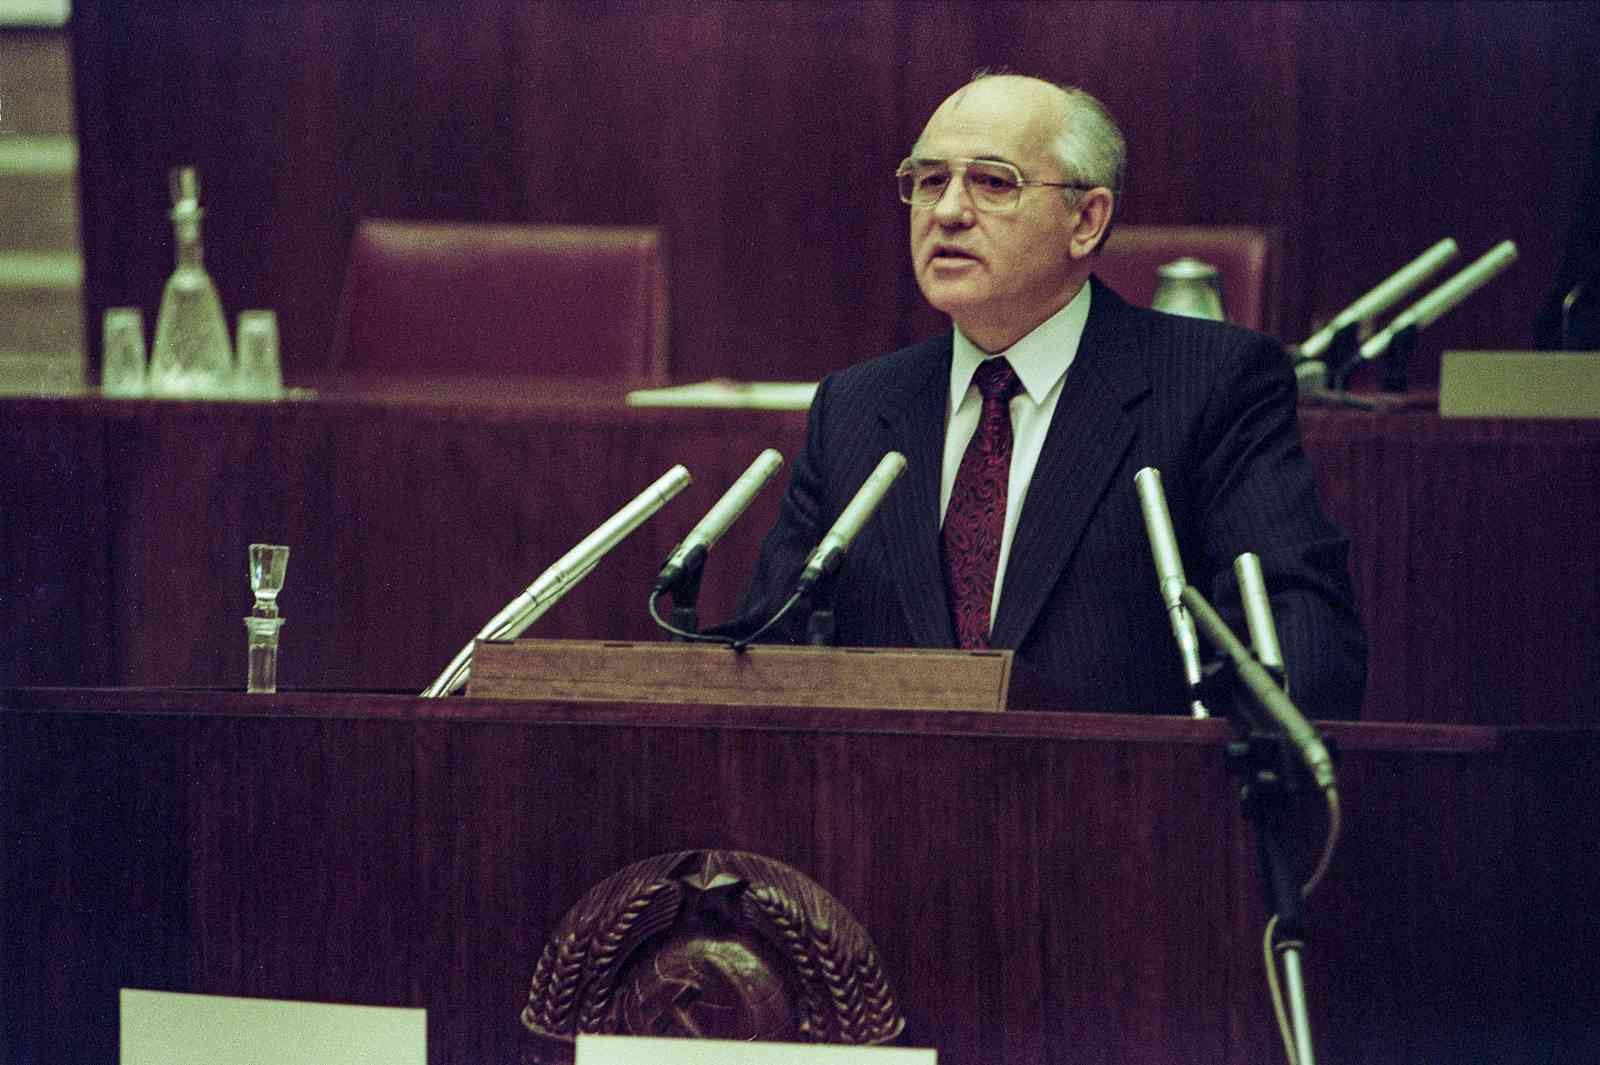 Sovyetler Birliği’nin son lideri Gorbaçov için 3 Eylül’de cenaze töreni düzenlenecek